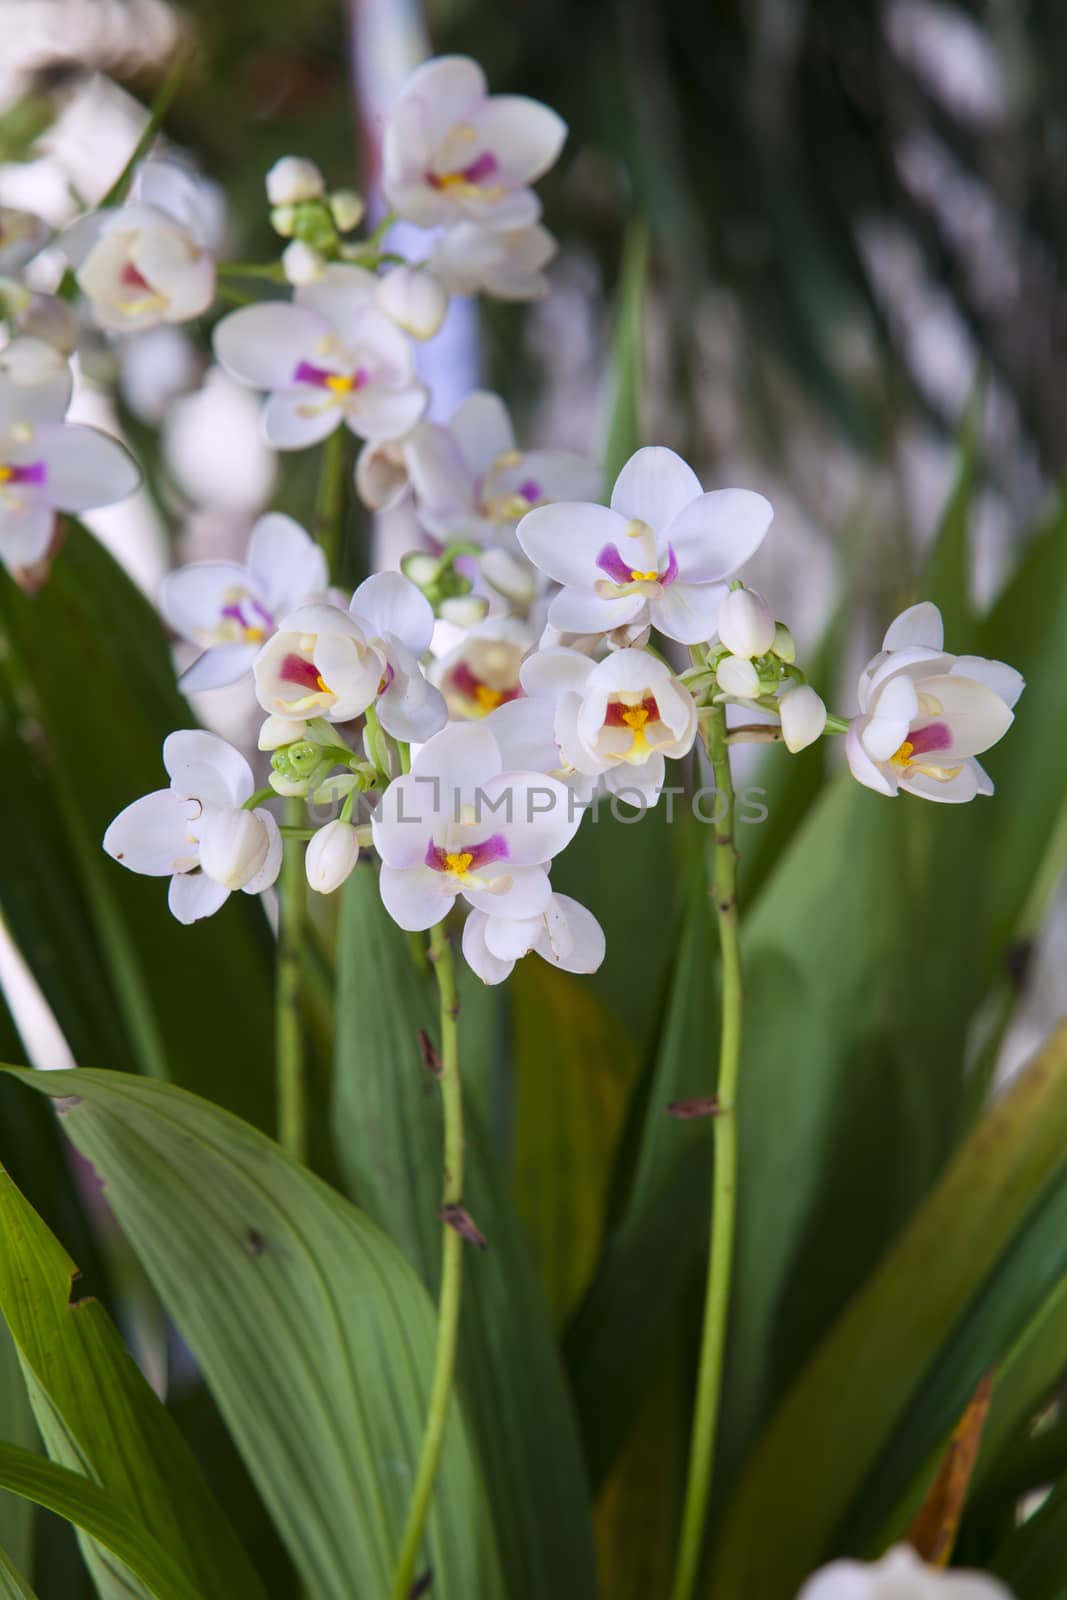 spathoglottis plicata orchid flower in a garden